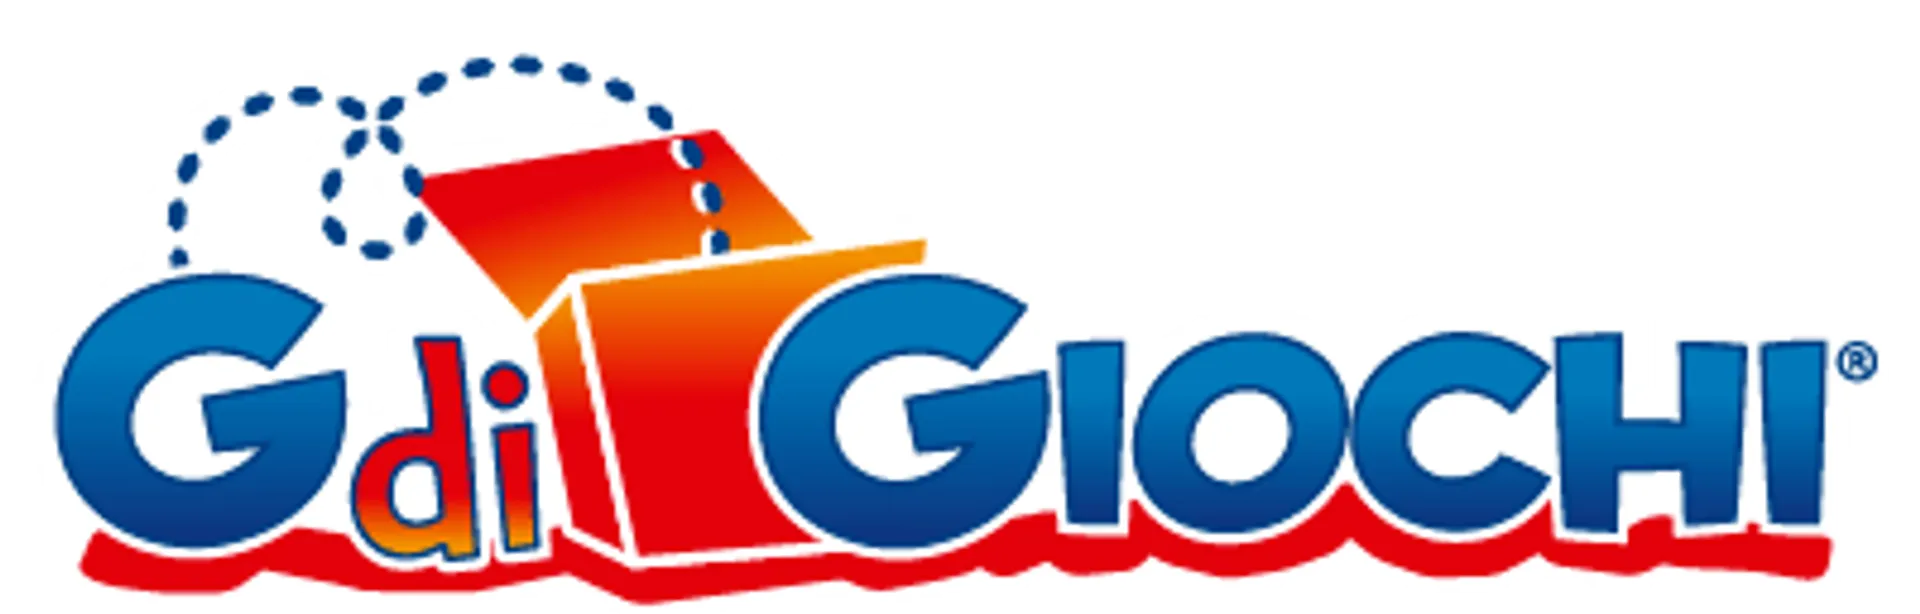 G DI GIOCHI logo